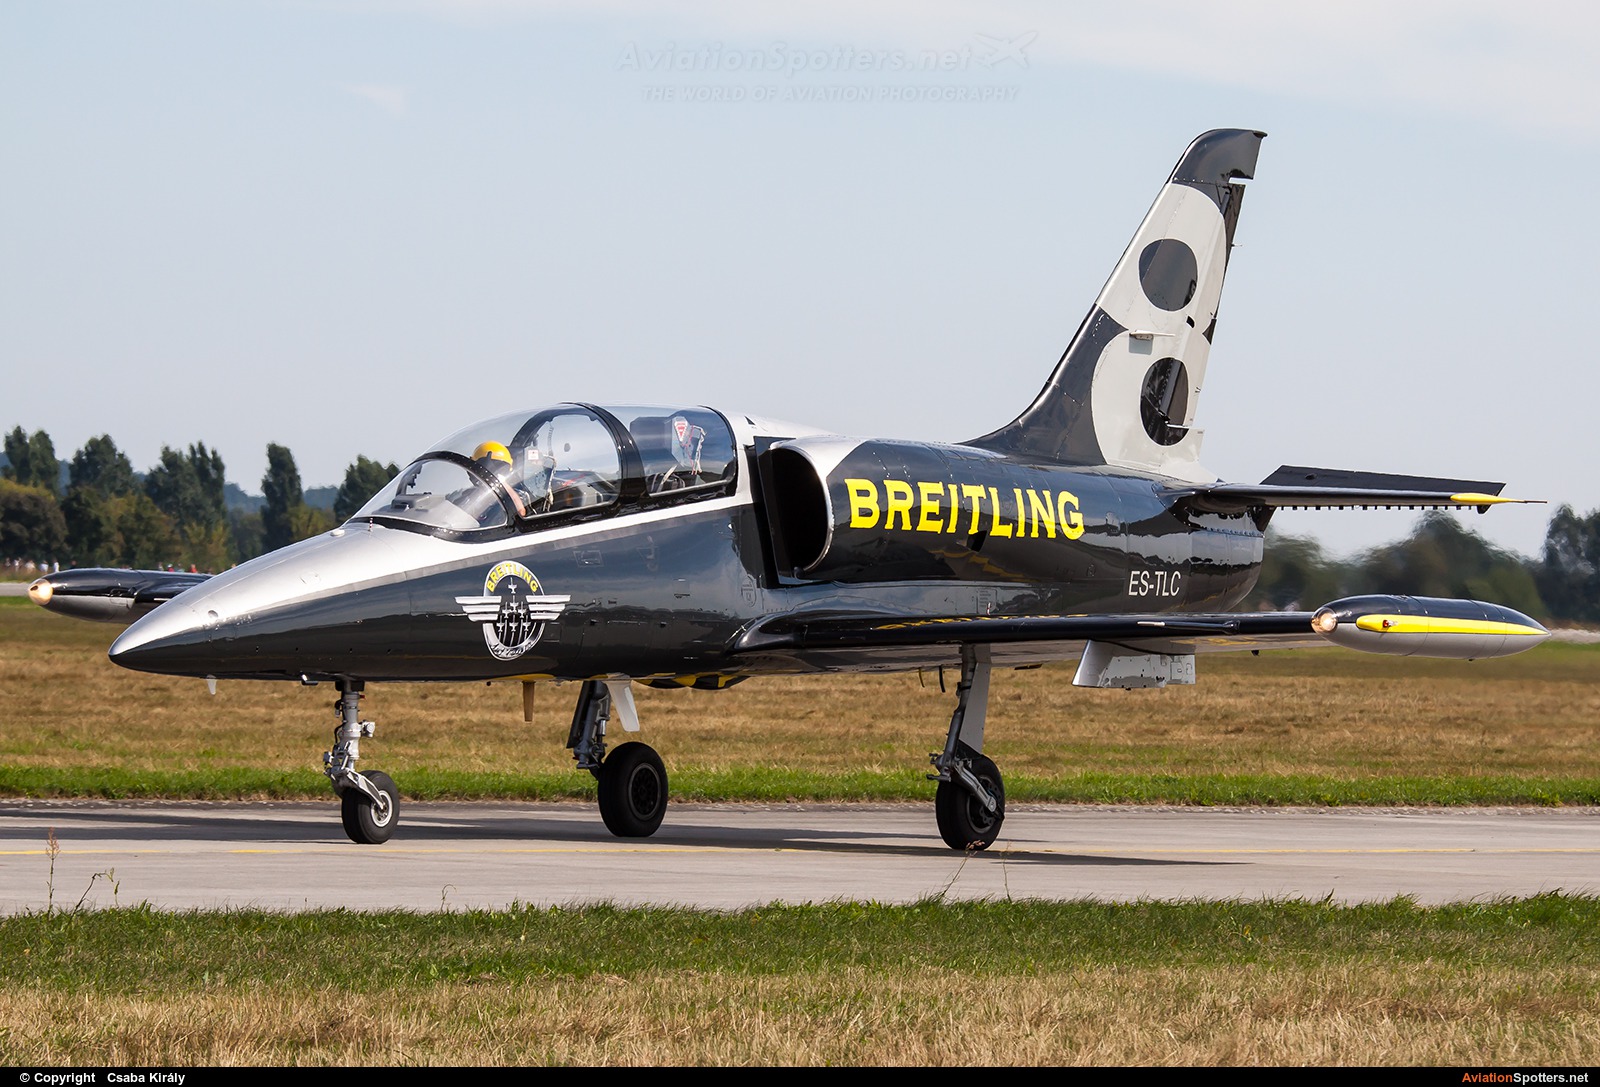 Breitling Jet Team  -  L-39C Albatros  (ES-TLC) By Csaba Király (Csaba Kiraly)